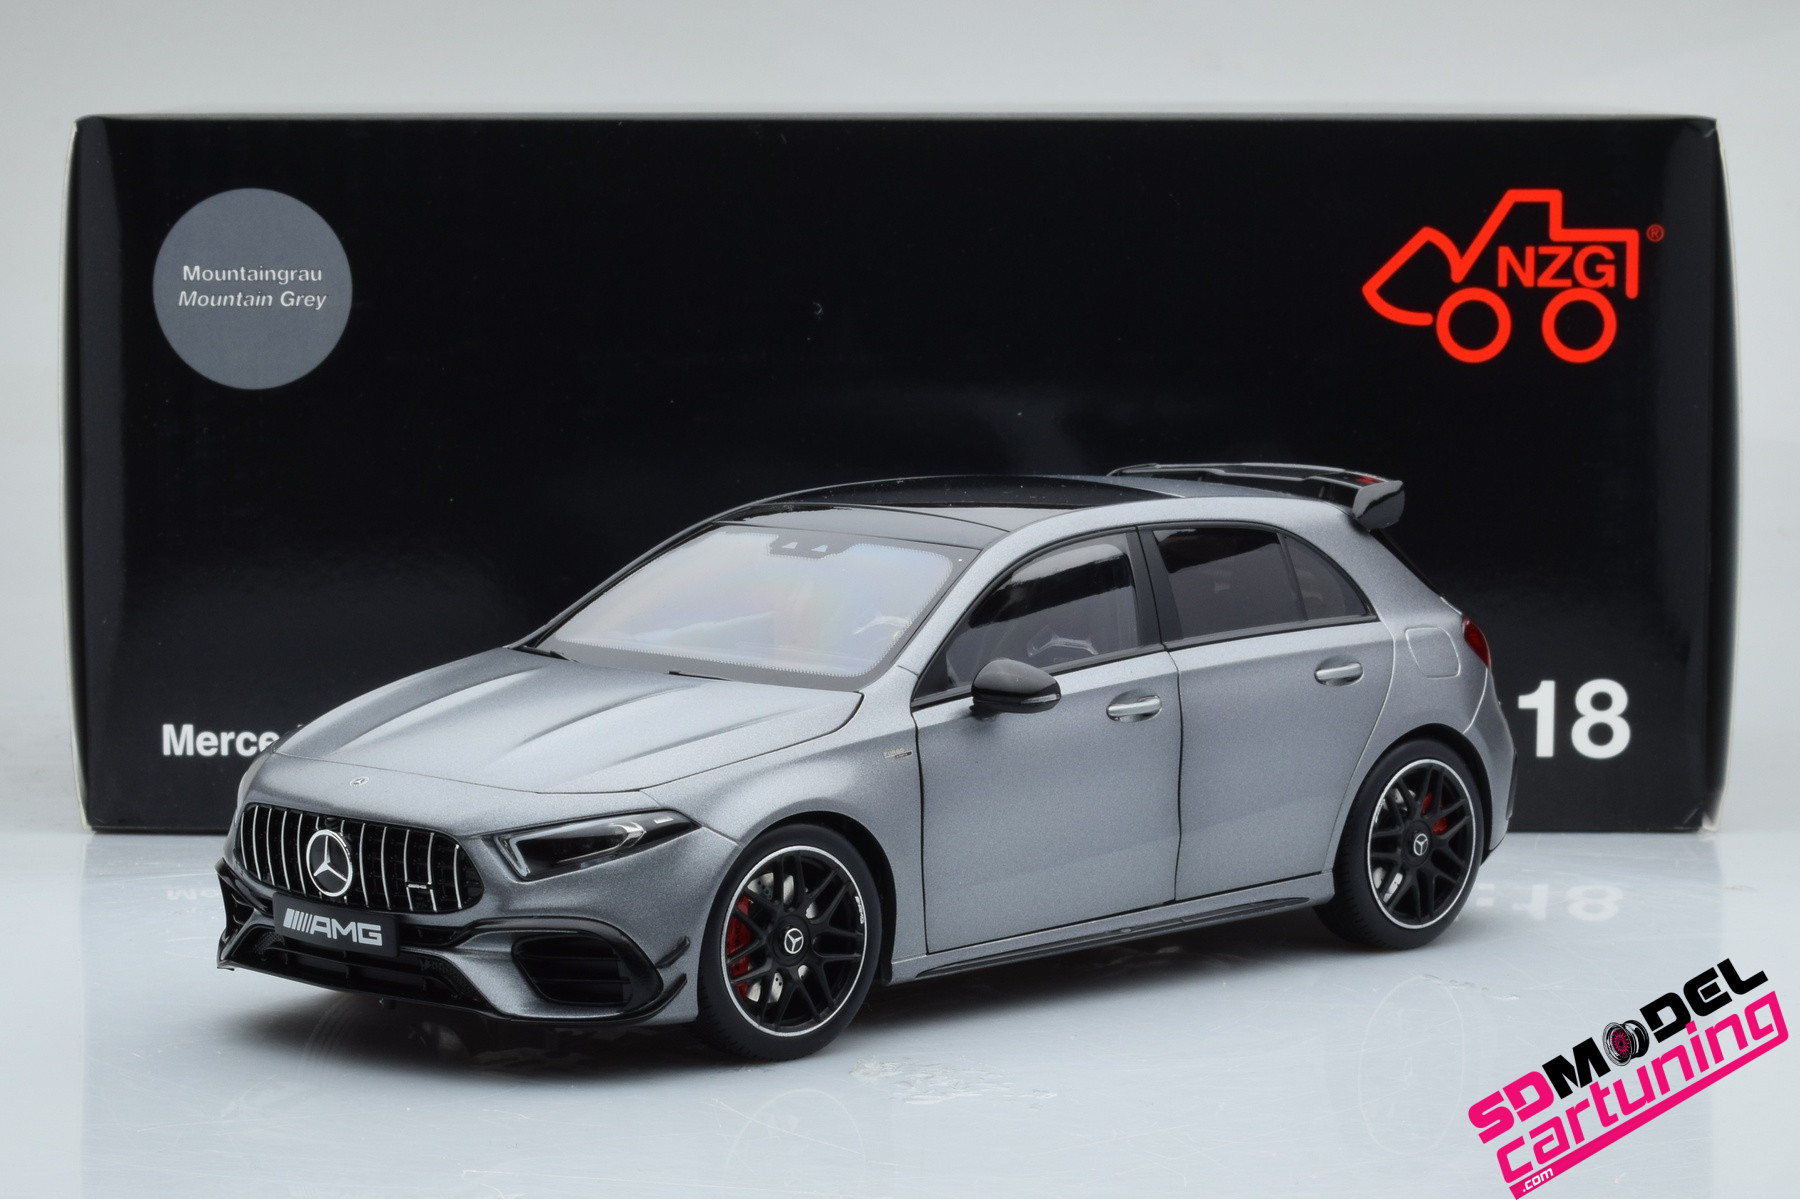 Mercedes-Benz A-Class Miniature Diecast Model Car 1:18 Mountain Grey